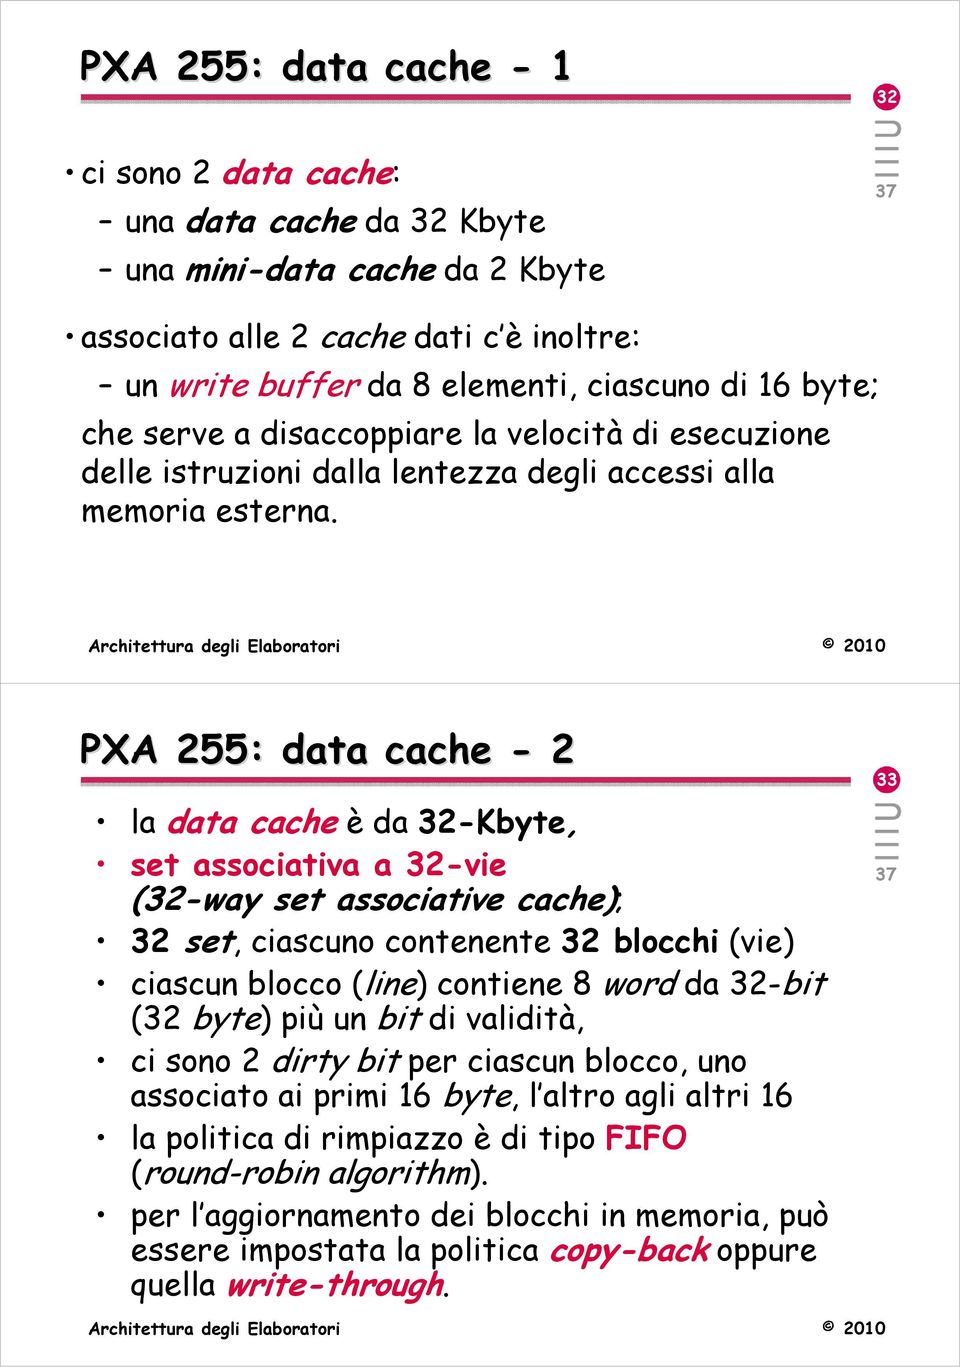 PXA 255: data cache - 2 la data cache èda 32-Kbyte, set associativa a 32-vie (32-way set associative cache); 32 set, ciascuno contenente 32 blocchi (vie) ciascun blocco (line) contiene 8 word da